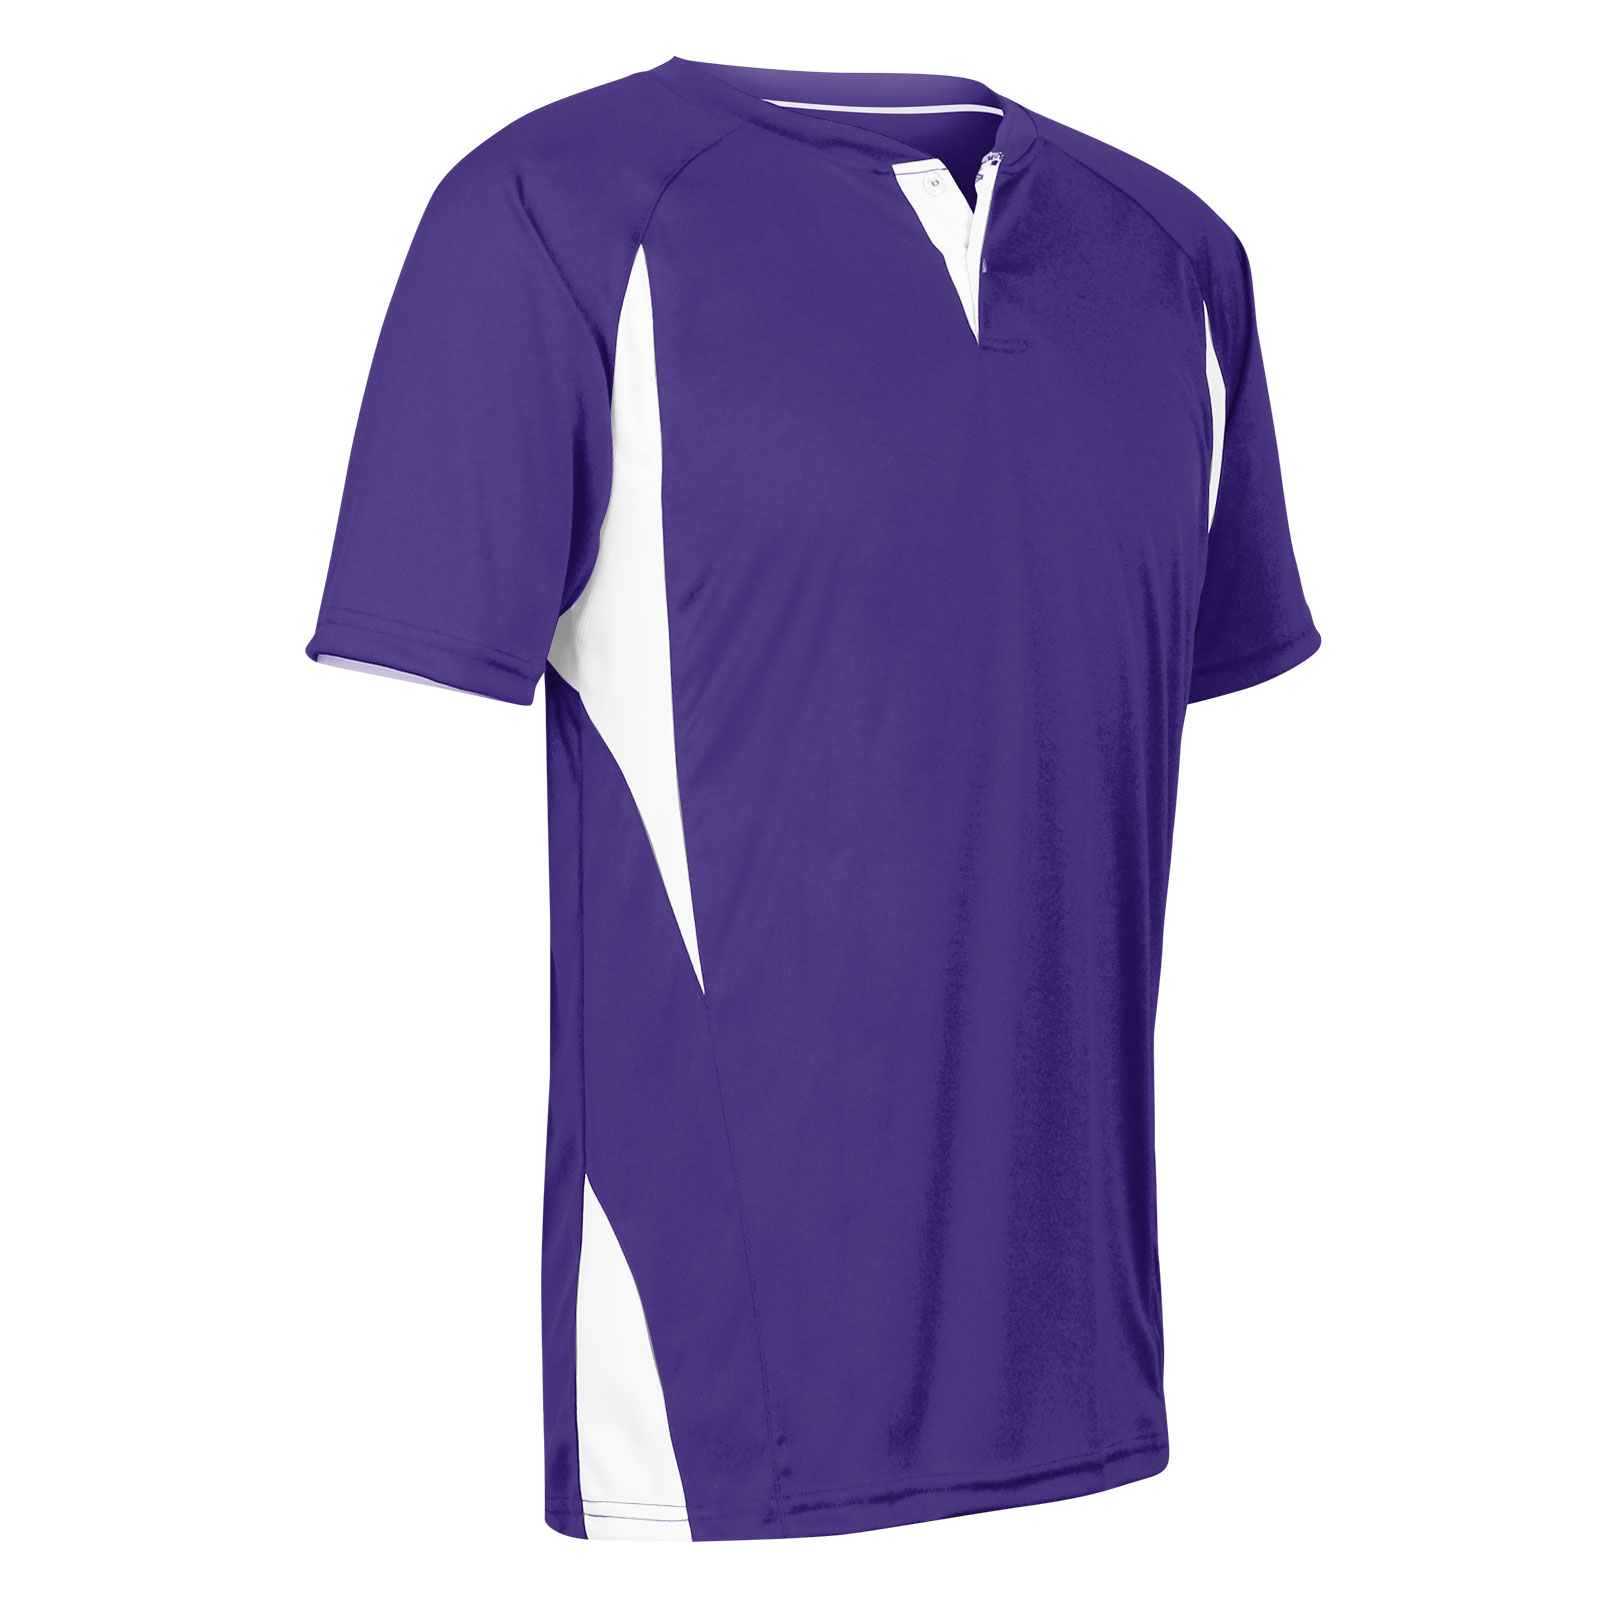 purple 2 button baseball jersey